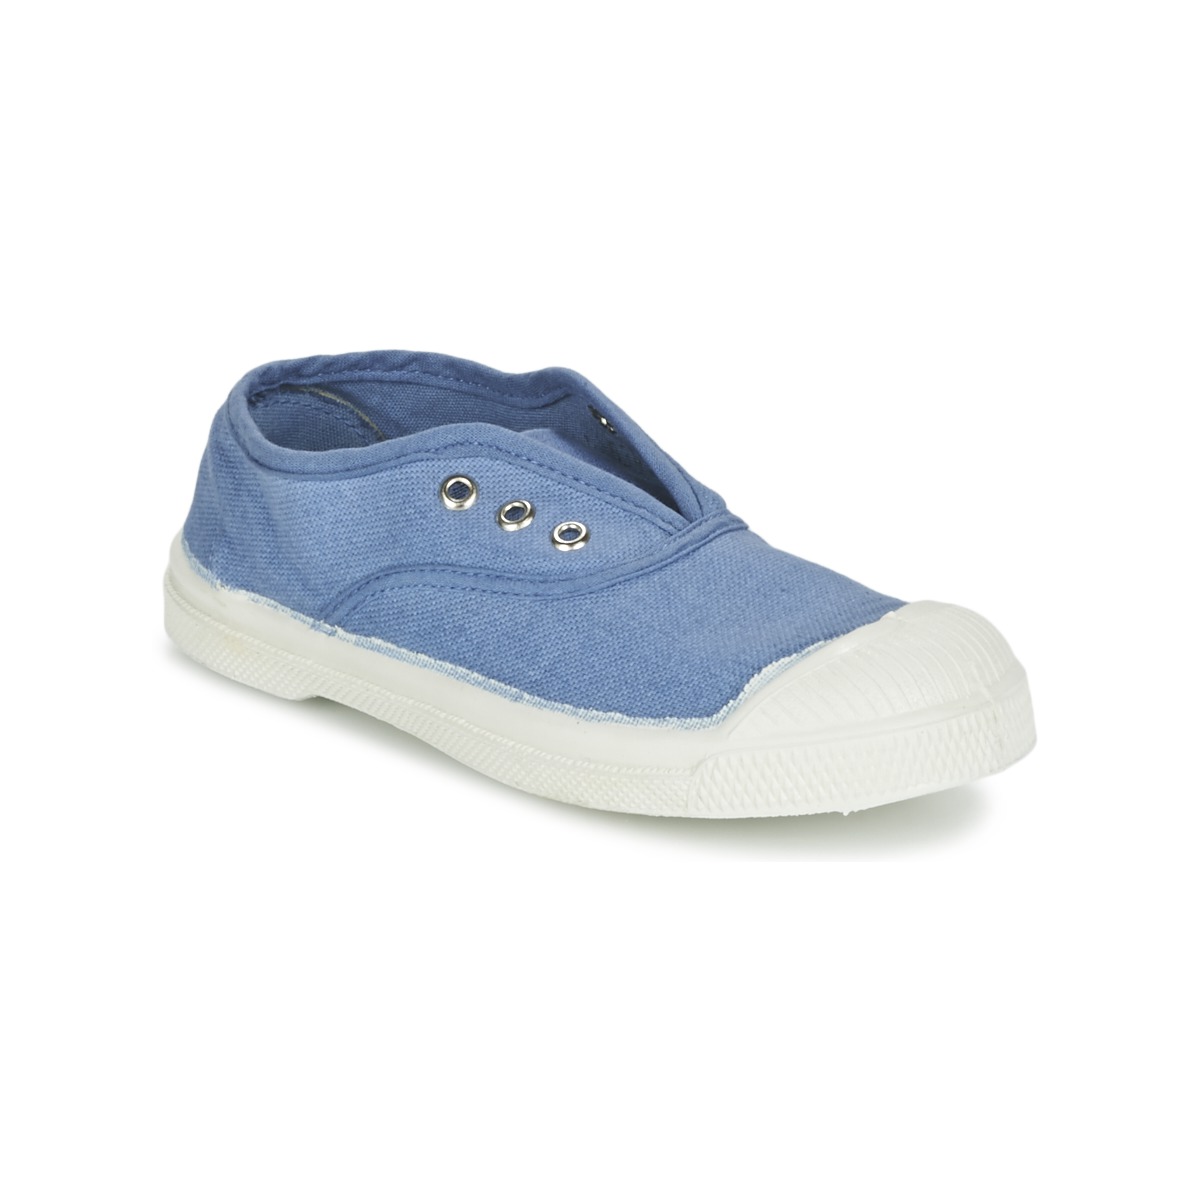 鞋子 儿童 球鞋基本款 Bensimon TENNIS ELLY 蓝色